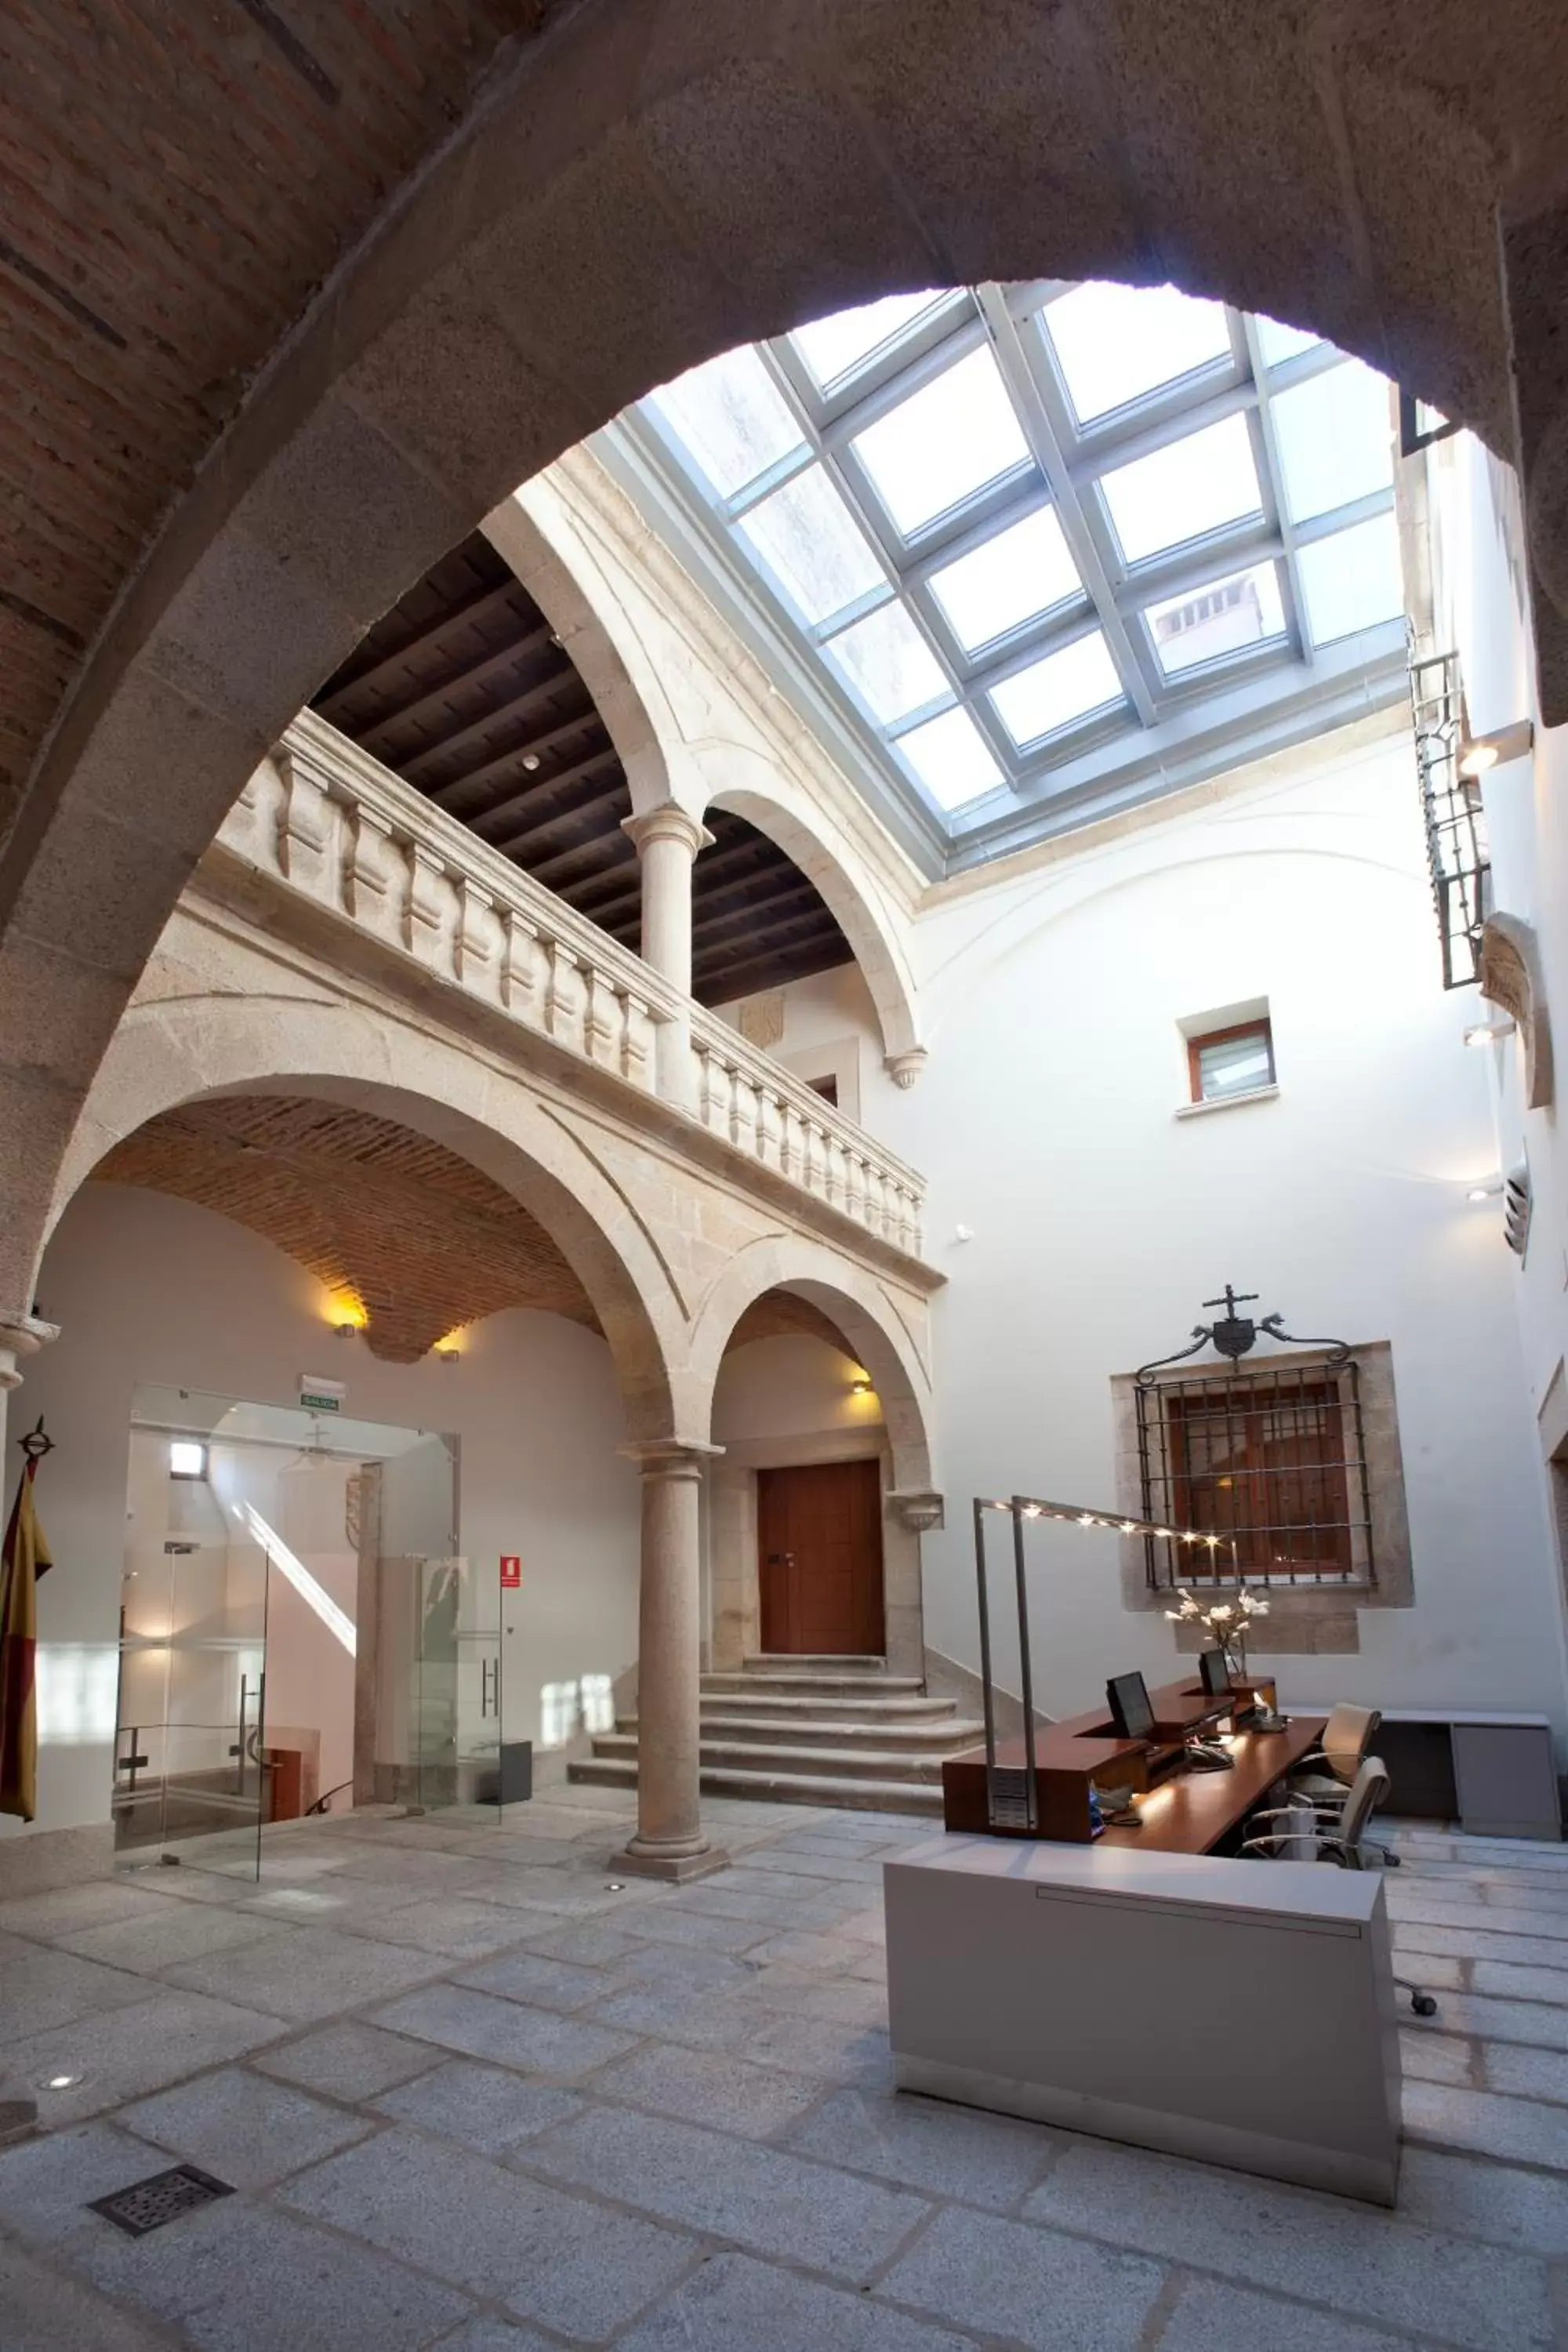 Lobby or reception in Parador de Caceres